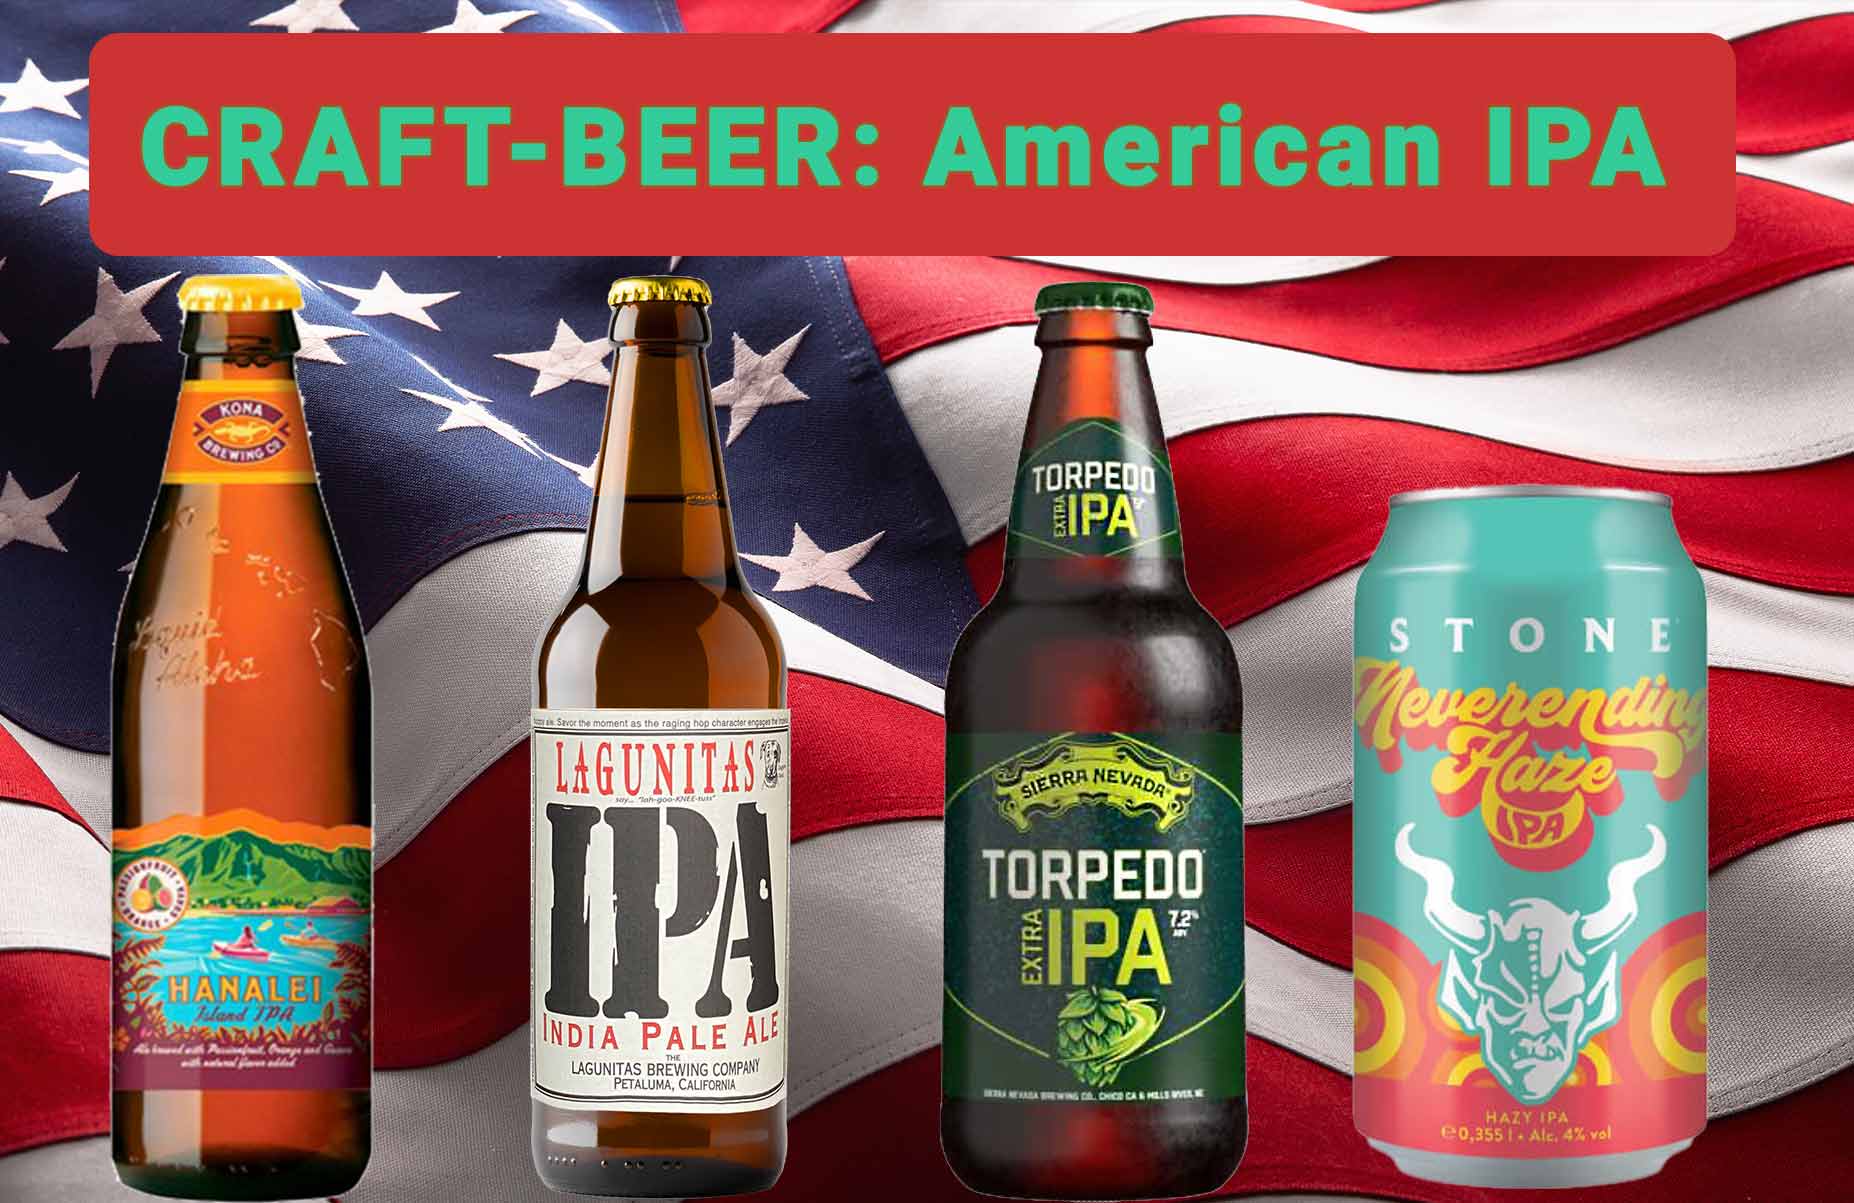 Craft-Beer kaufen als American IPA